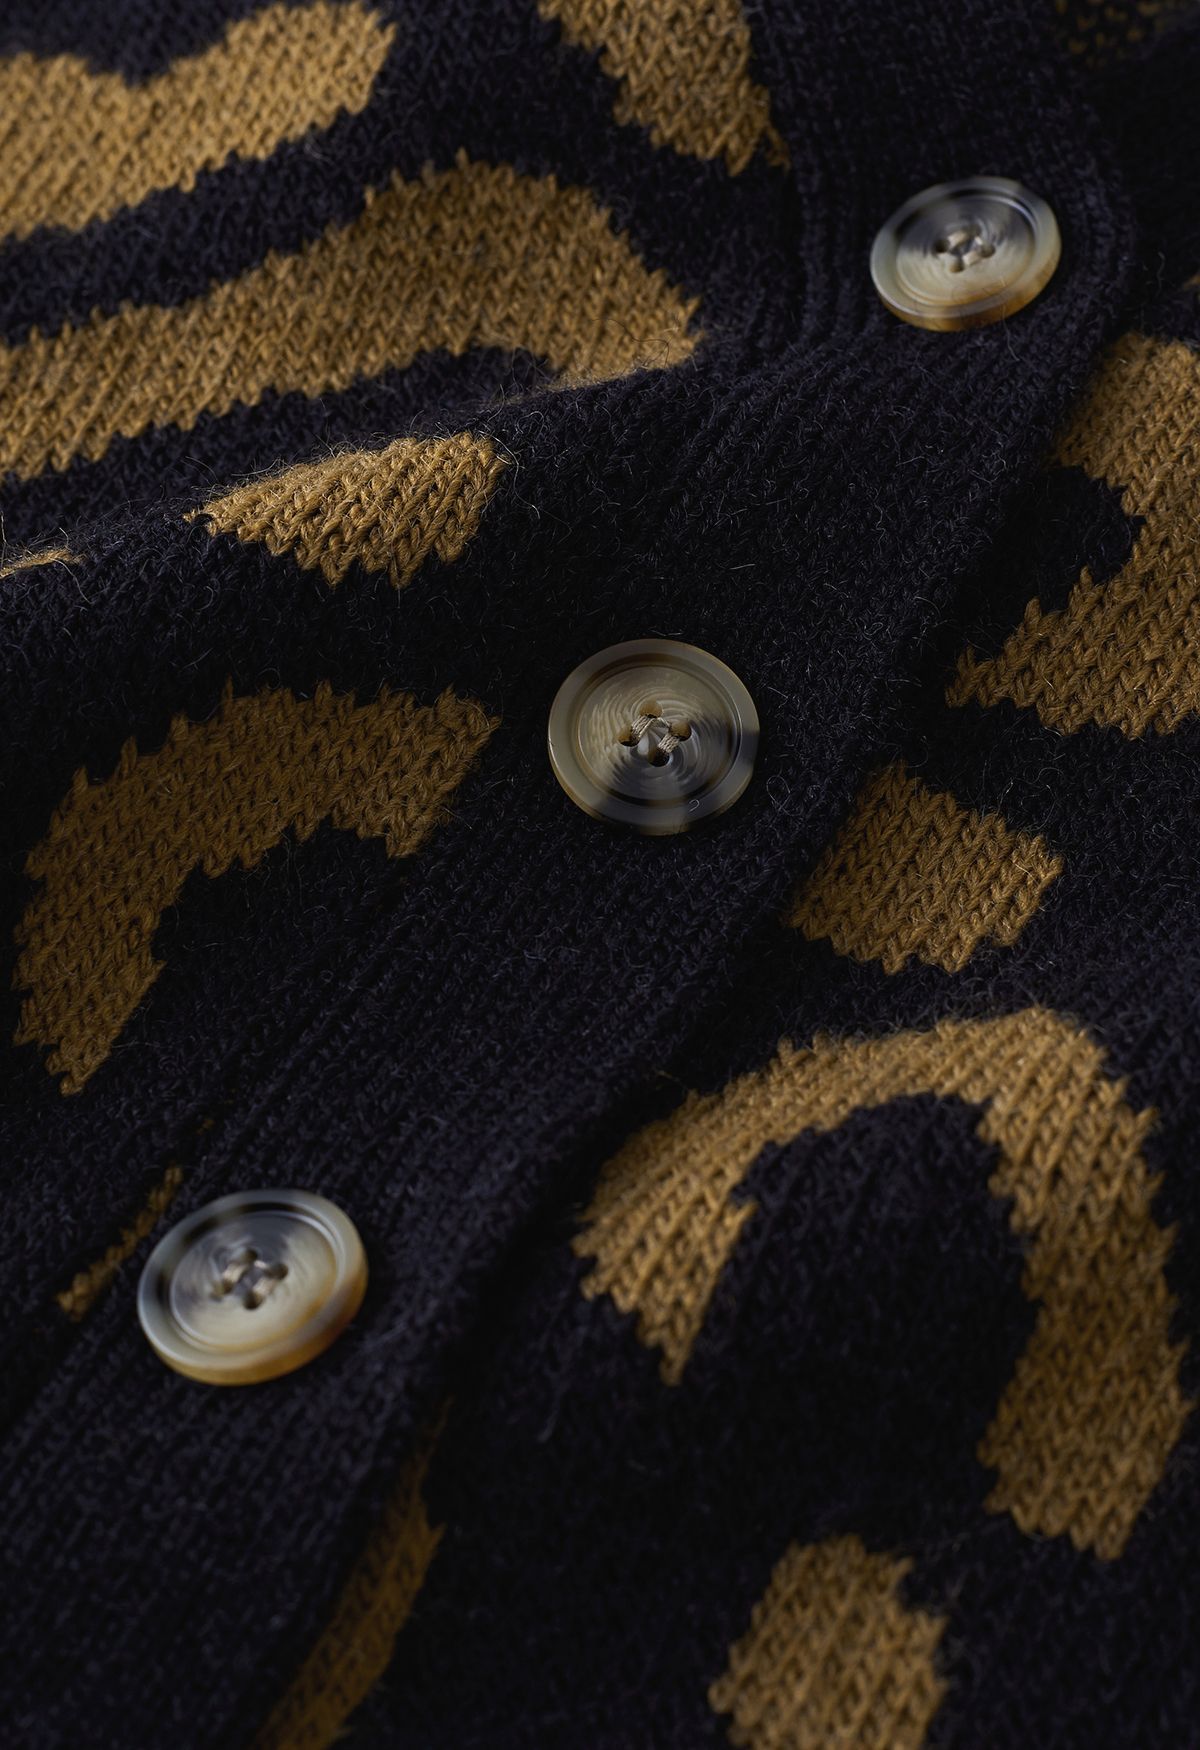 Cardigan en tricot boutonné à imprimé léopard